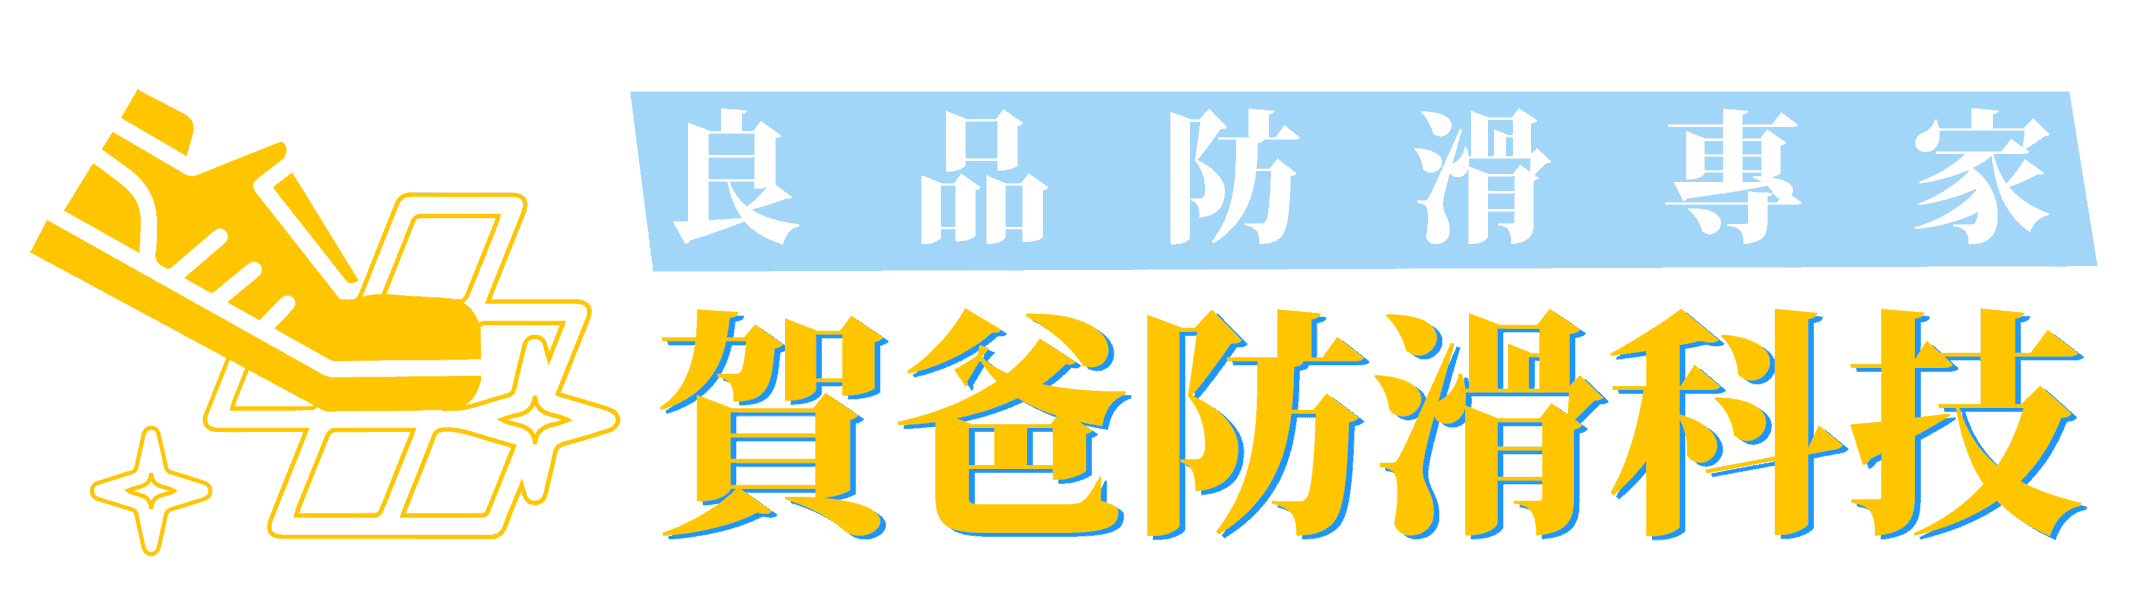 賀爸防滑科技 Logo